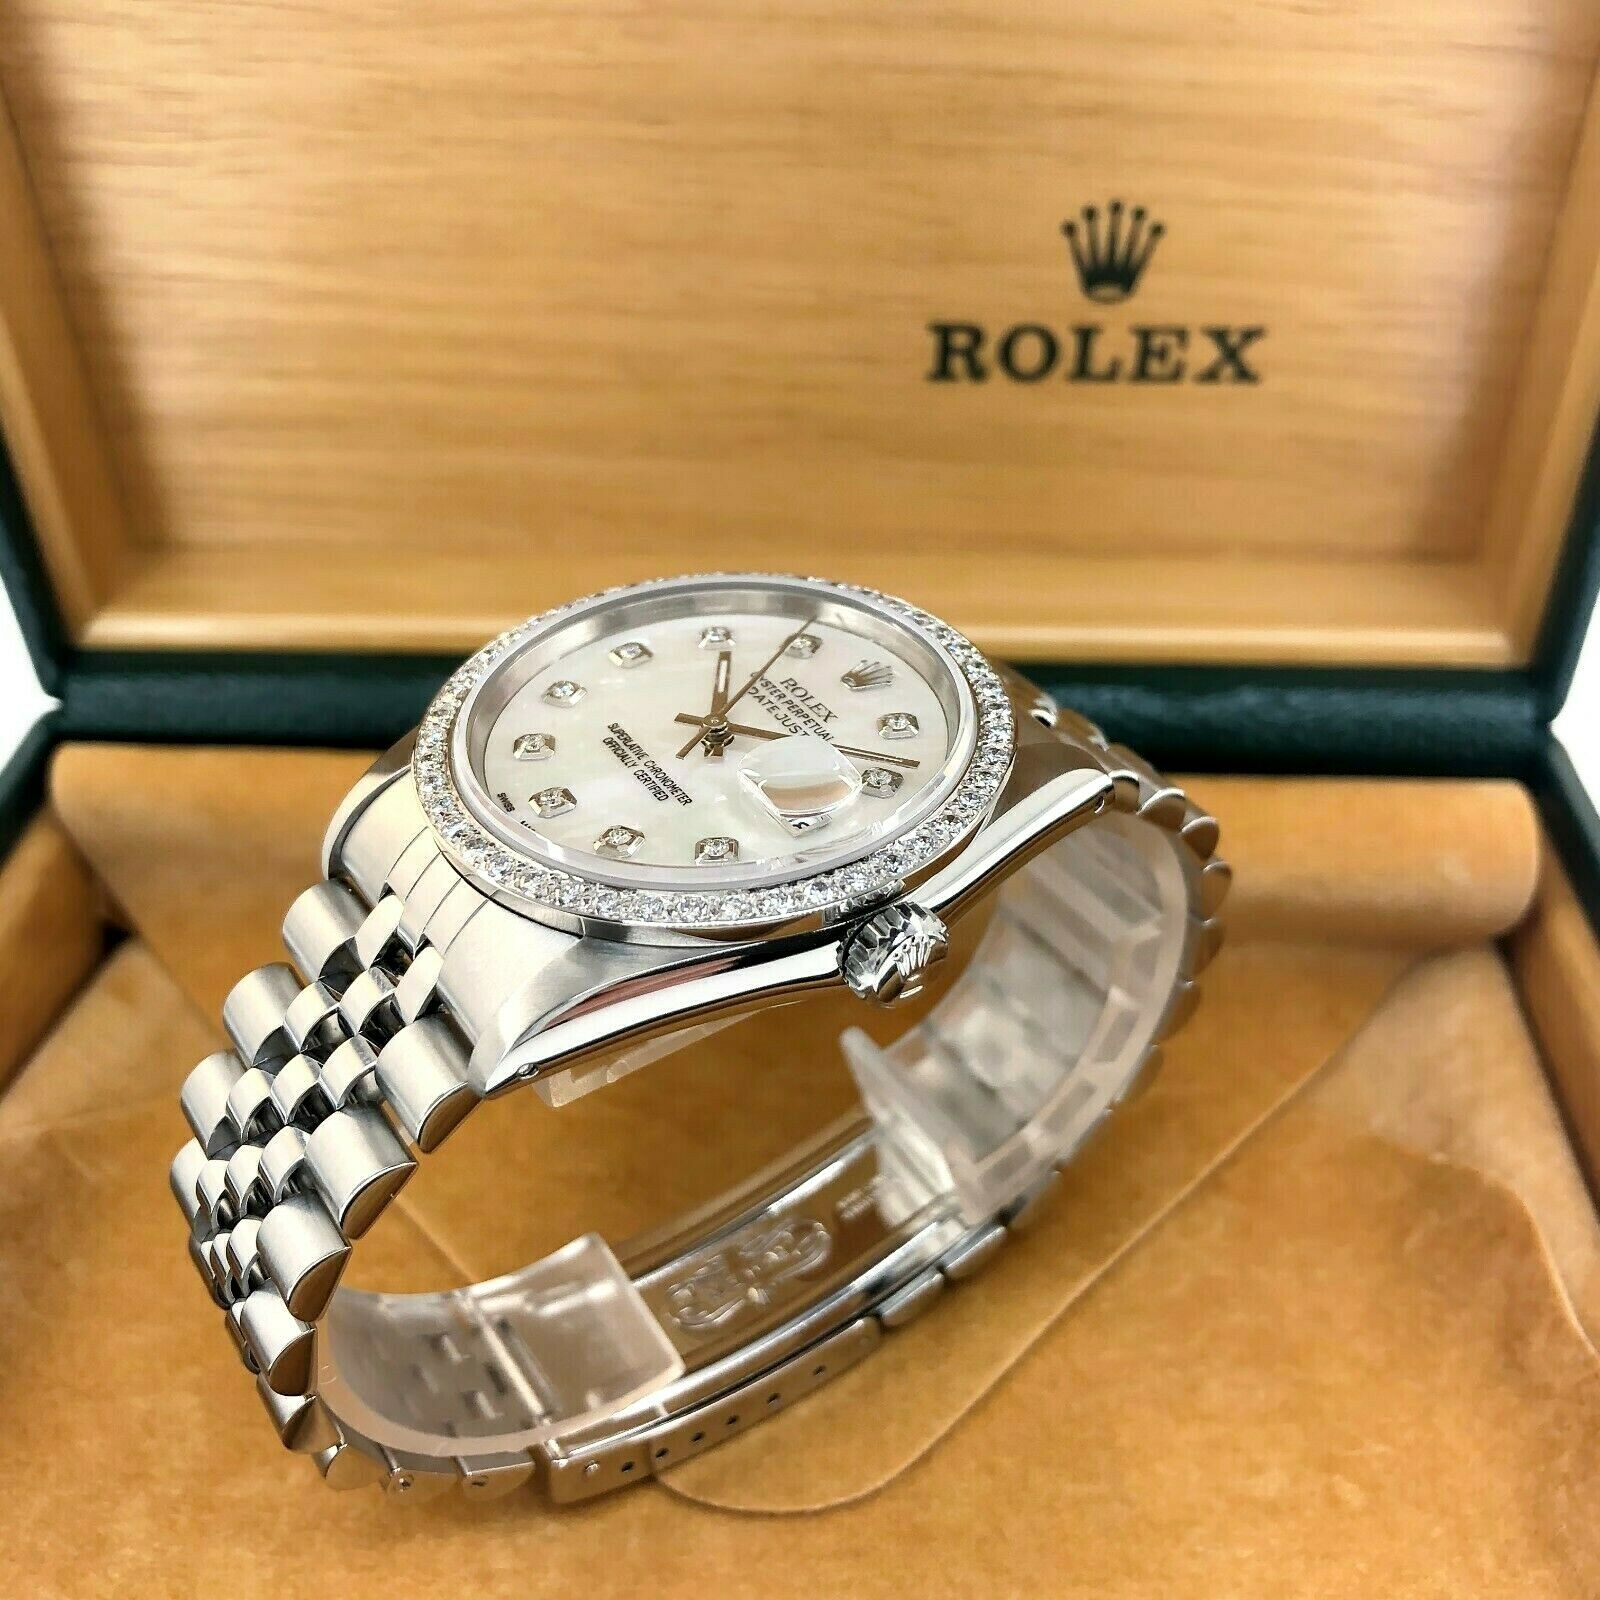 Rolex 36MM Datejust Diamond MOP Dial & Bezel Jubilee Band Steel Watch 16200